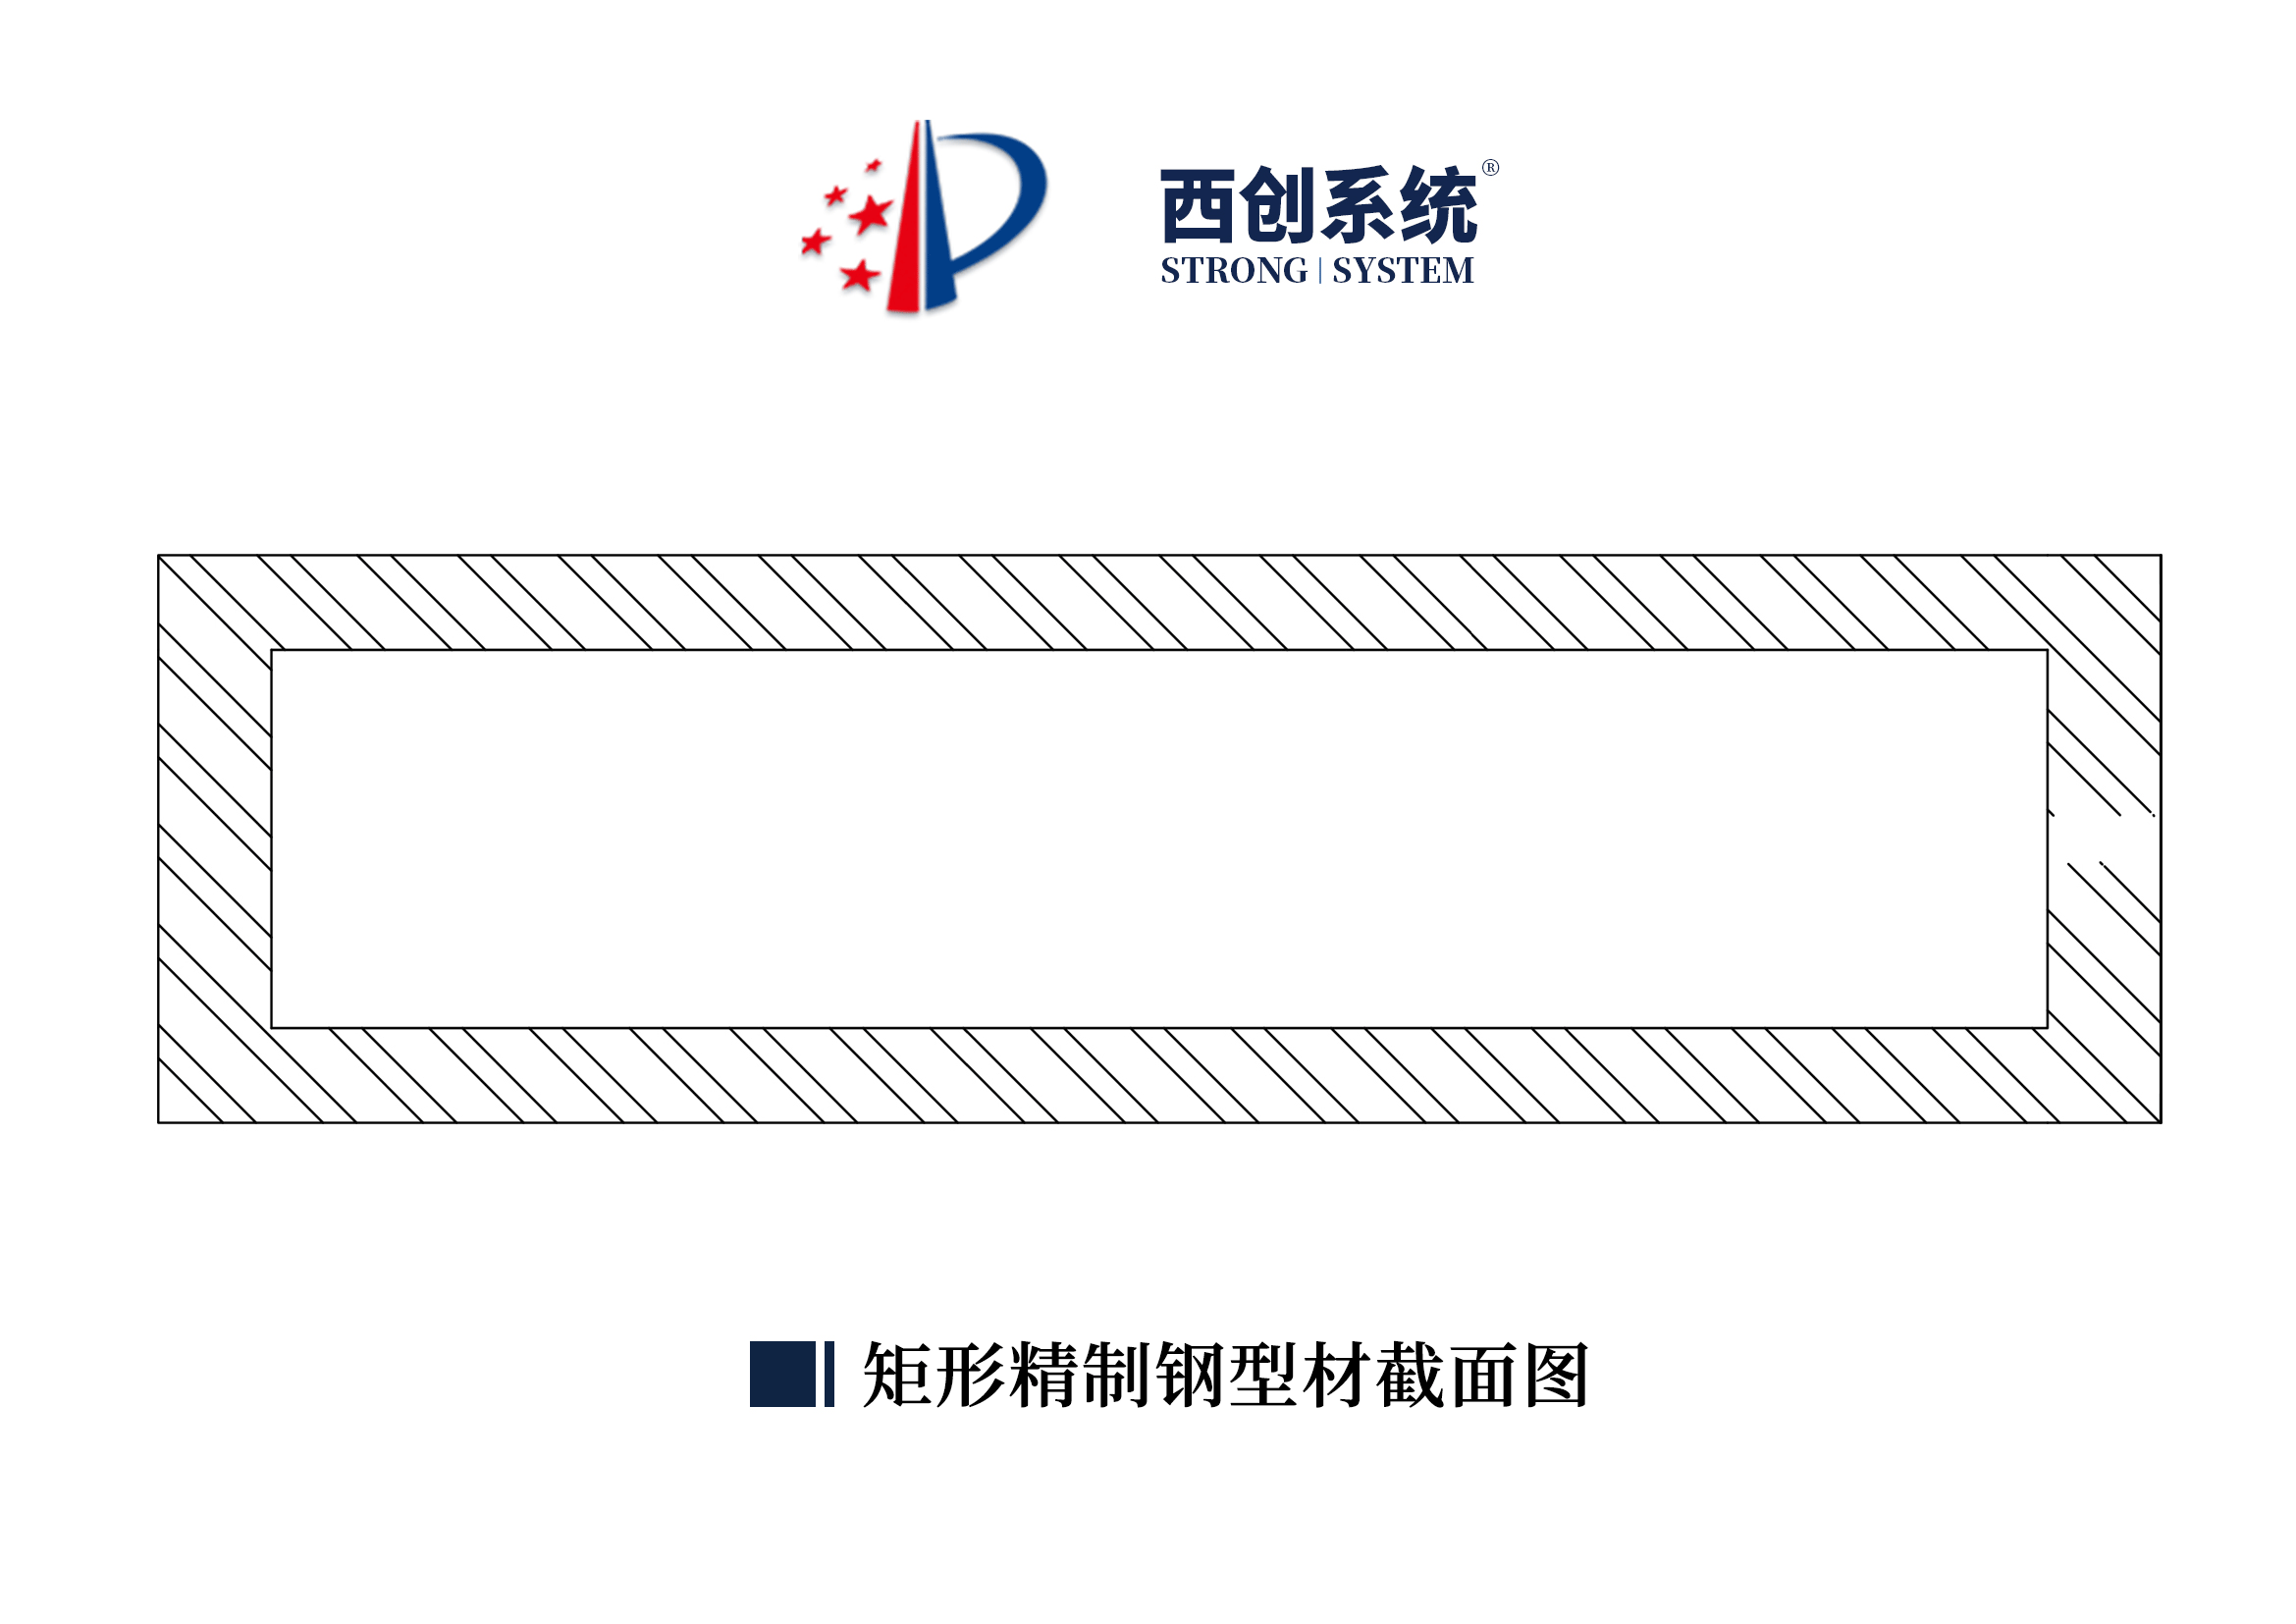 上海项目矩形、梯形精制钢采光顶系统图纸深化案例 - 西创系统(图6)